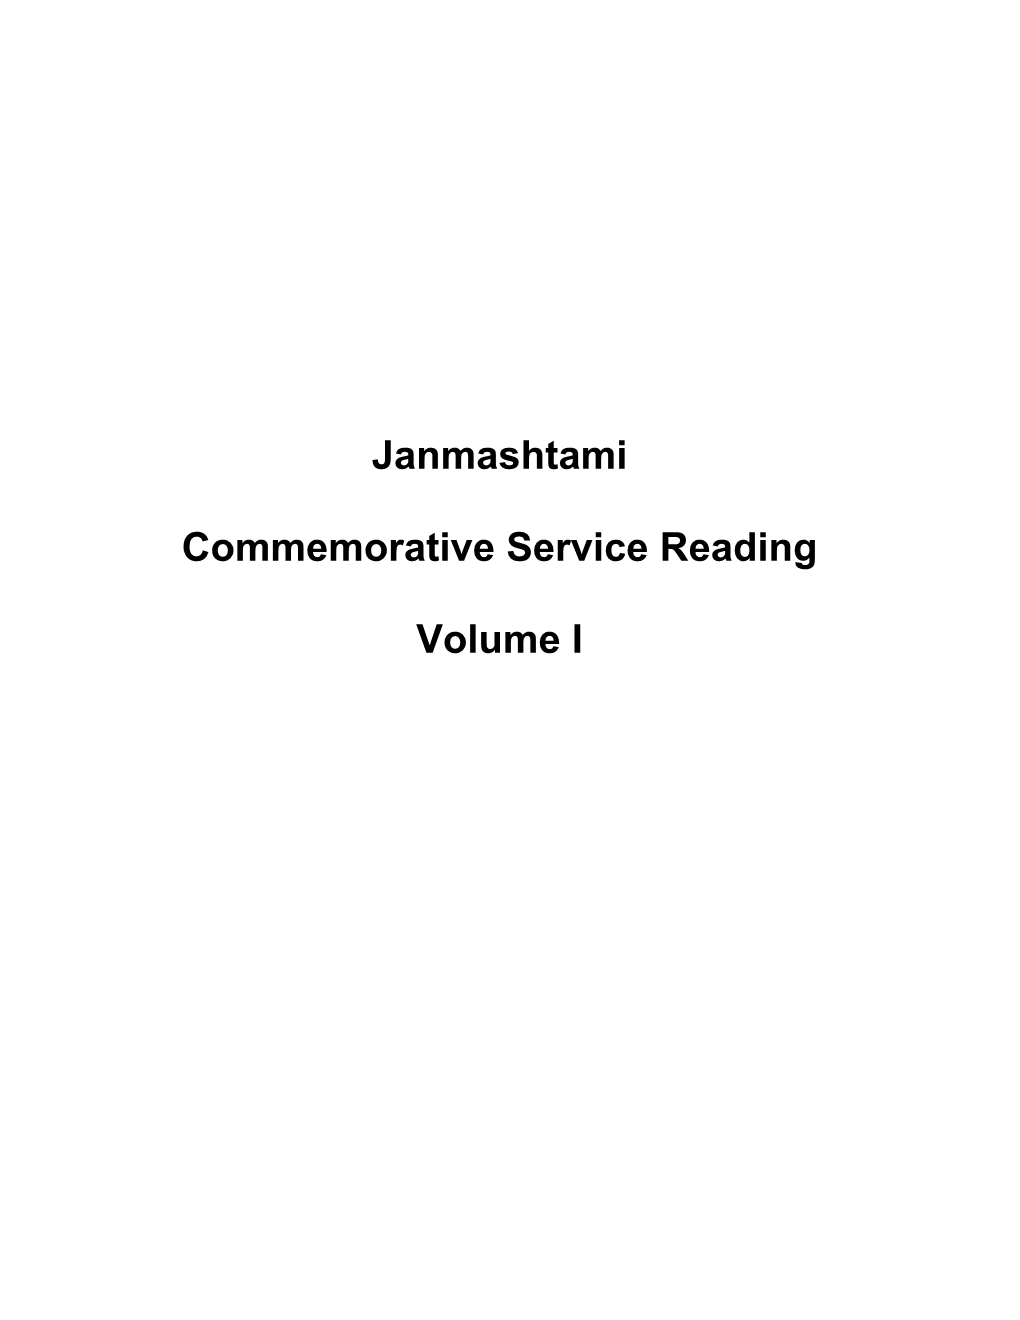 Janmashtami Volume I